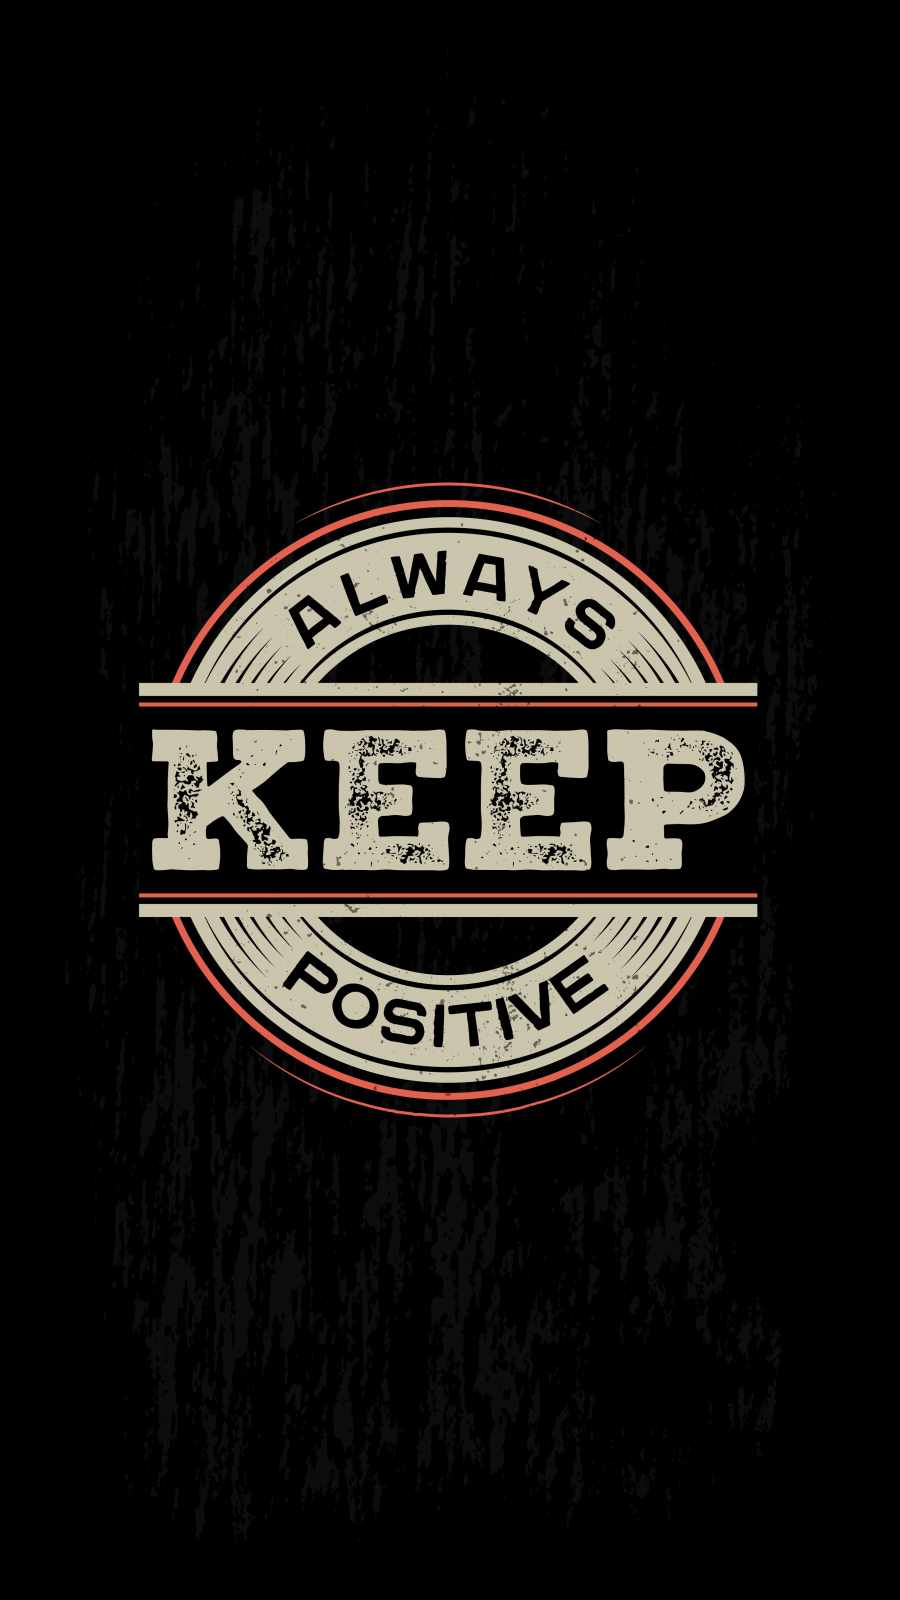 Always Keep Positive